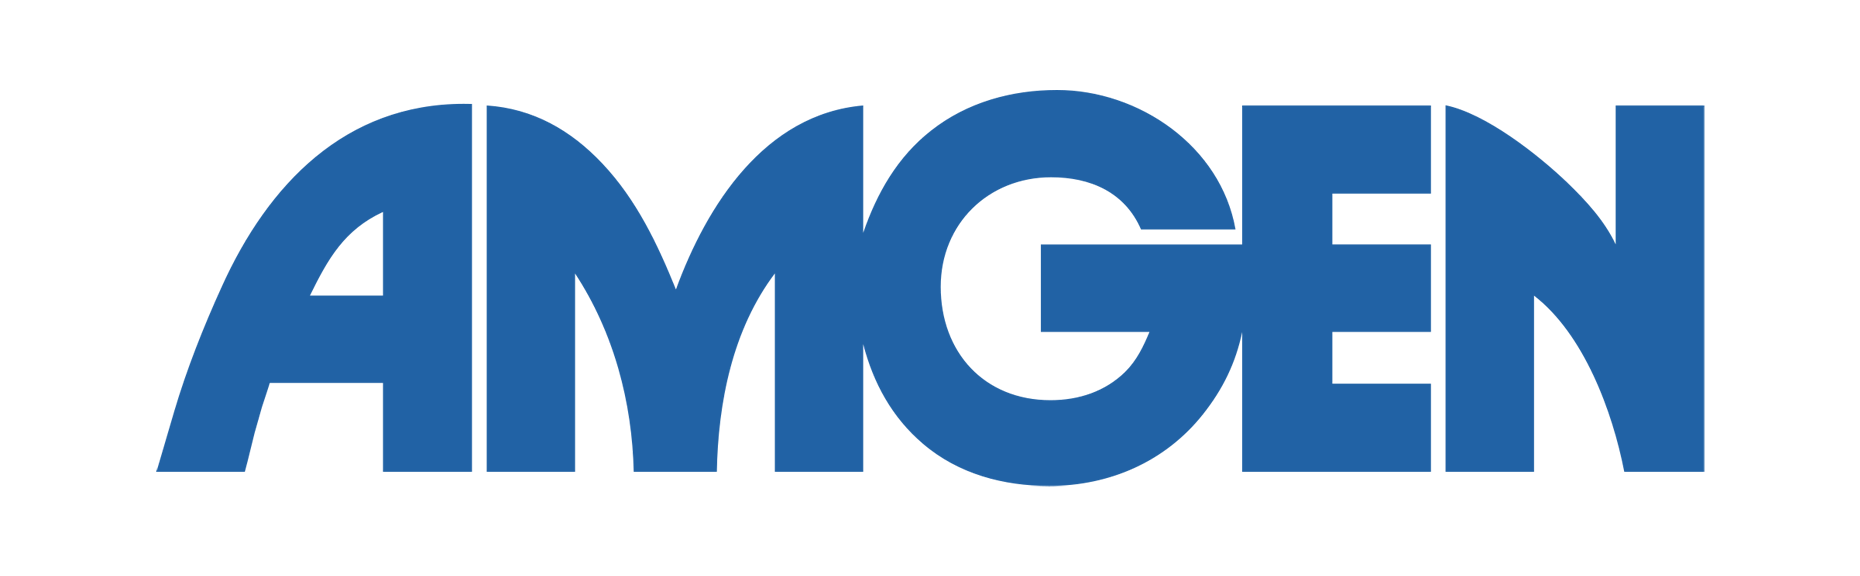 Amgen-Logo